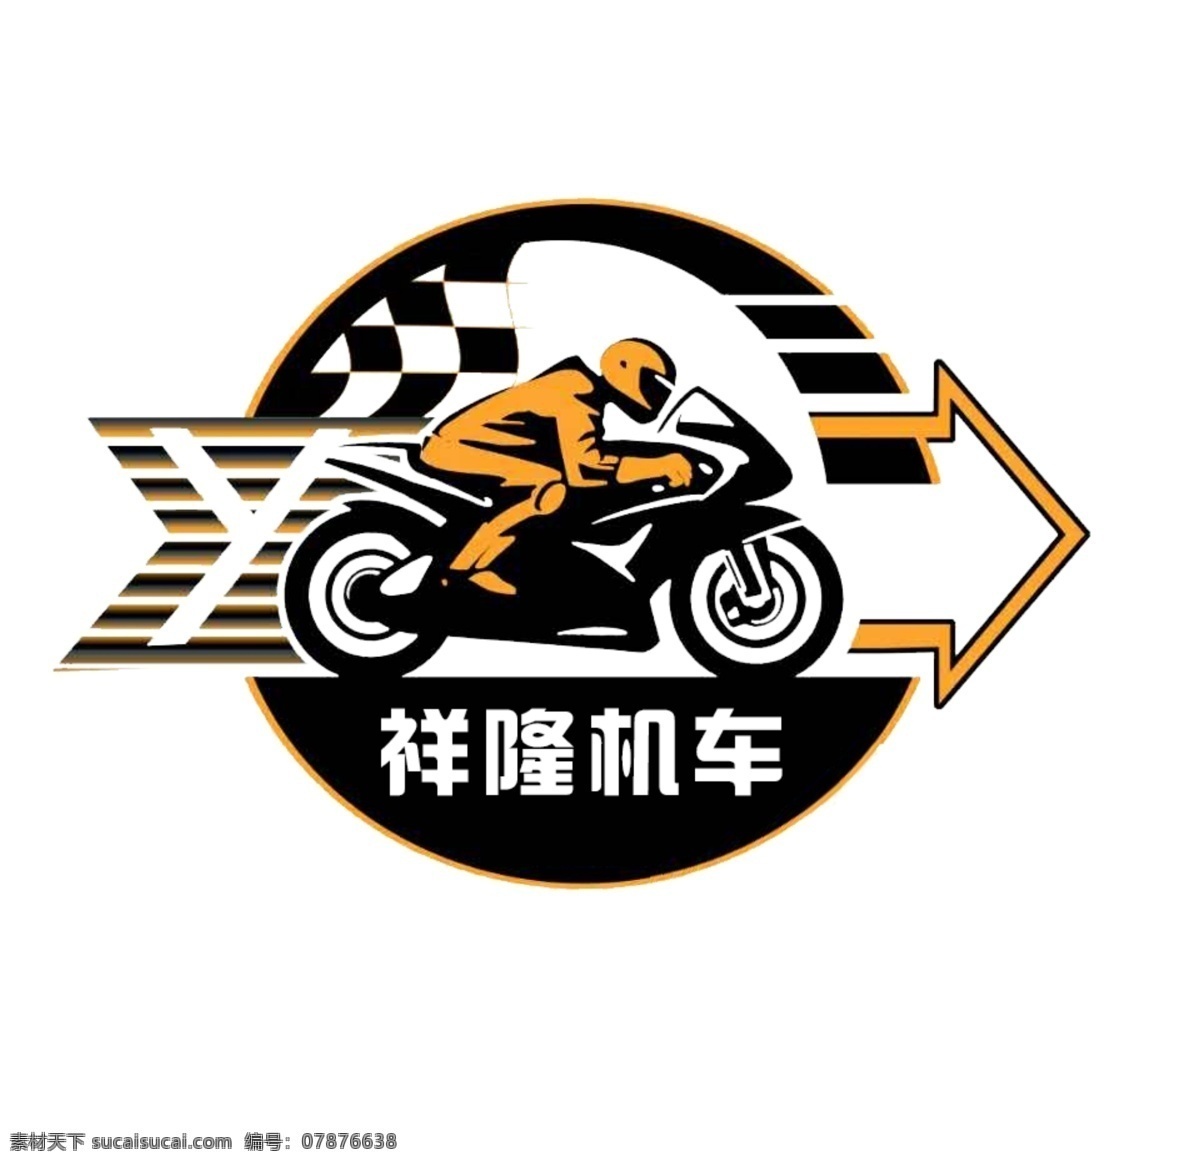 祥隆机车 祥隆 机车 标识 logo 车行 logo设计